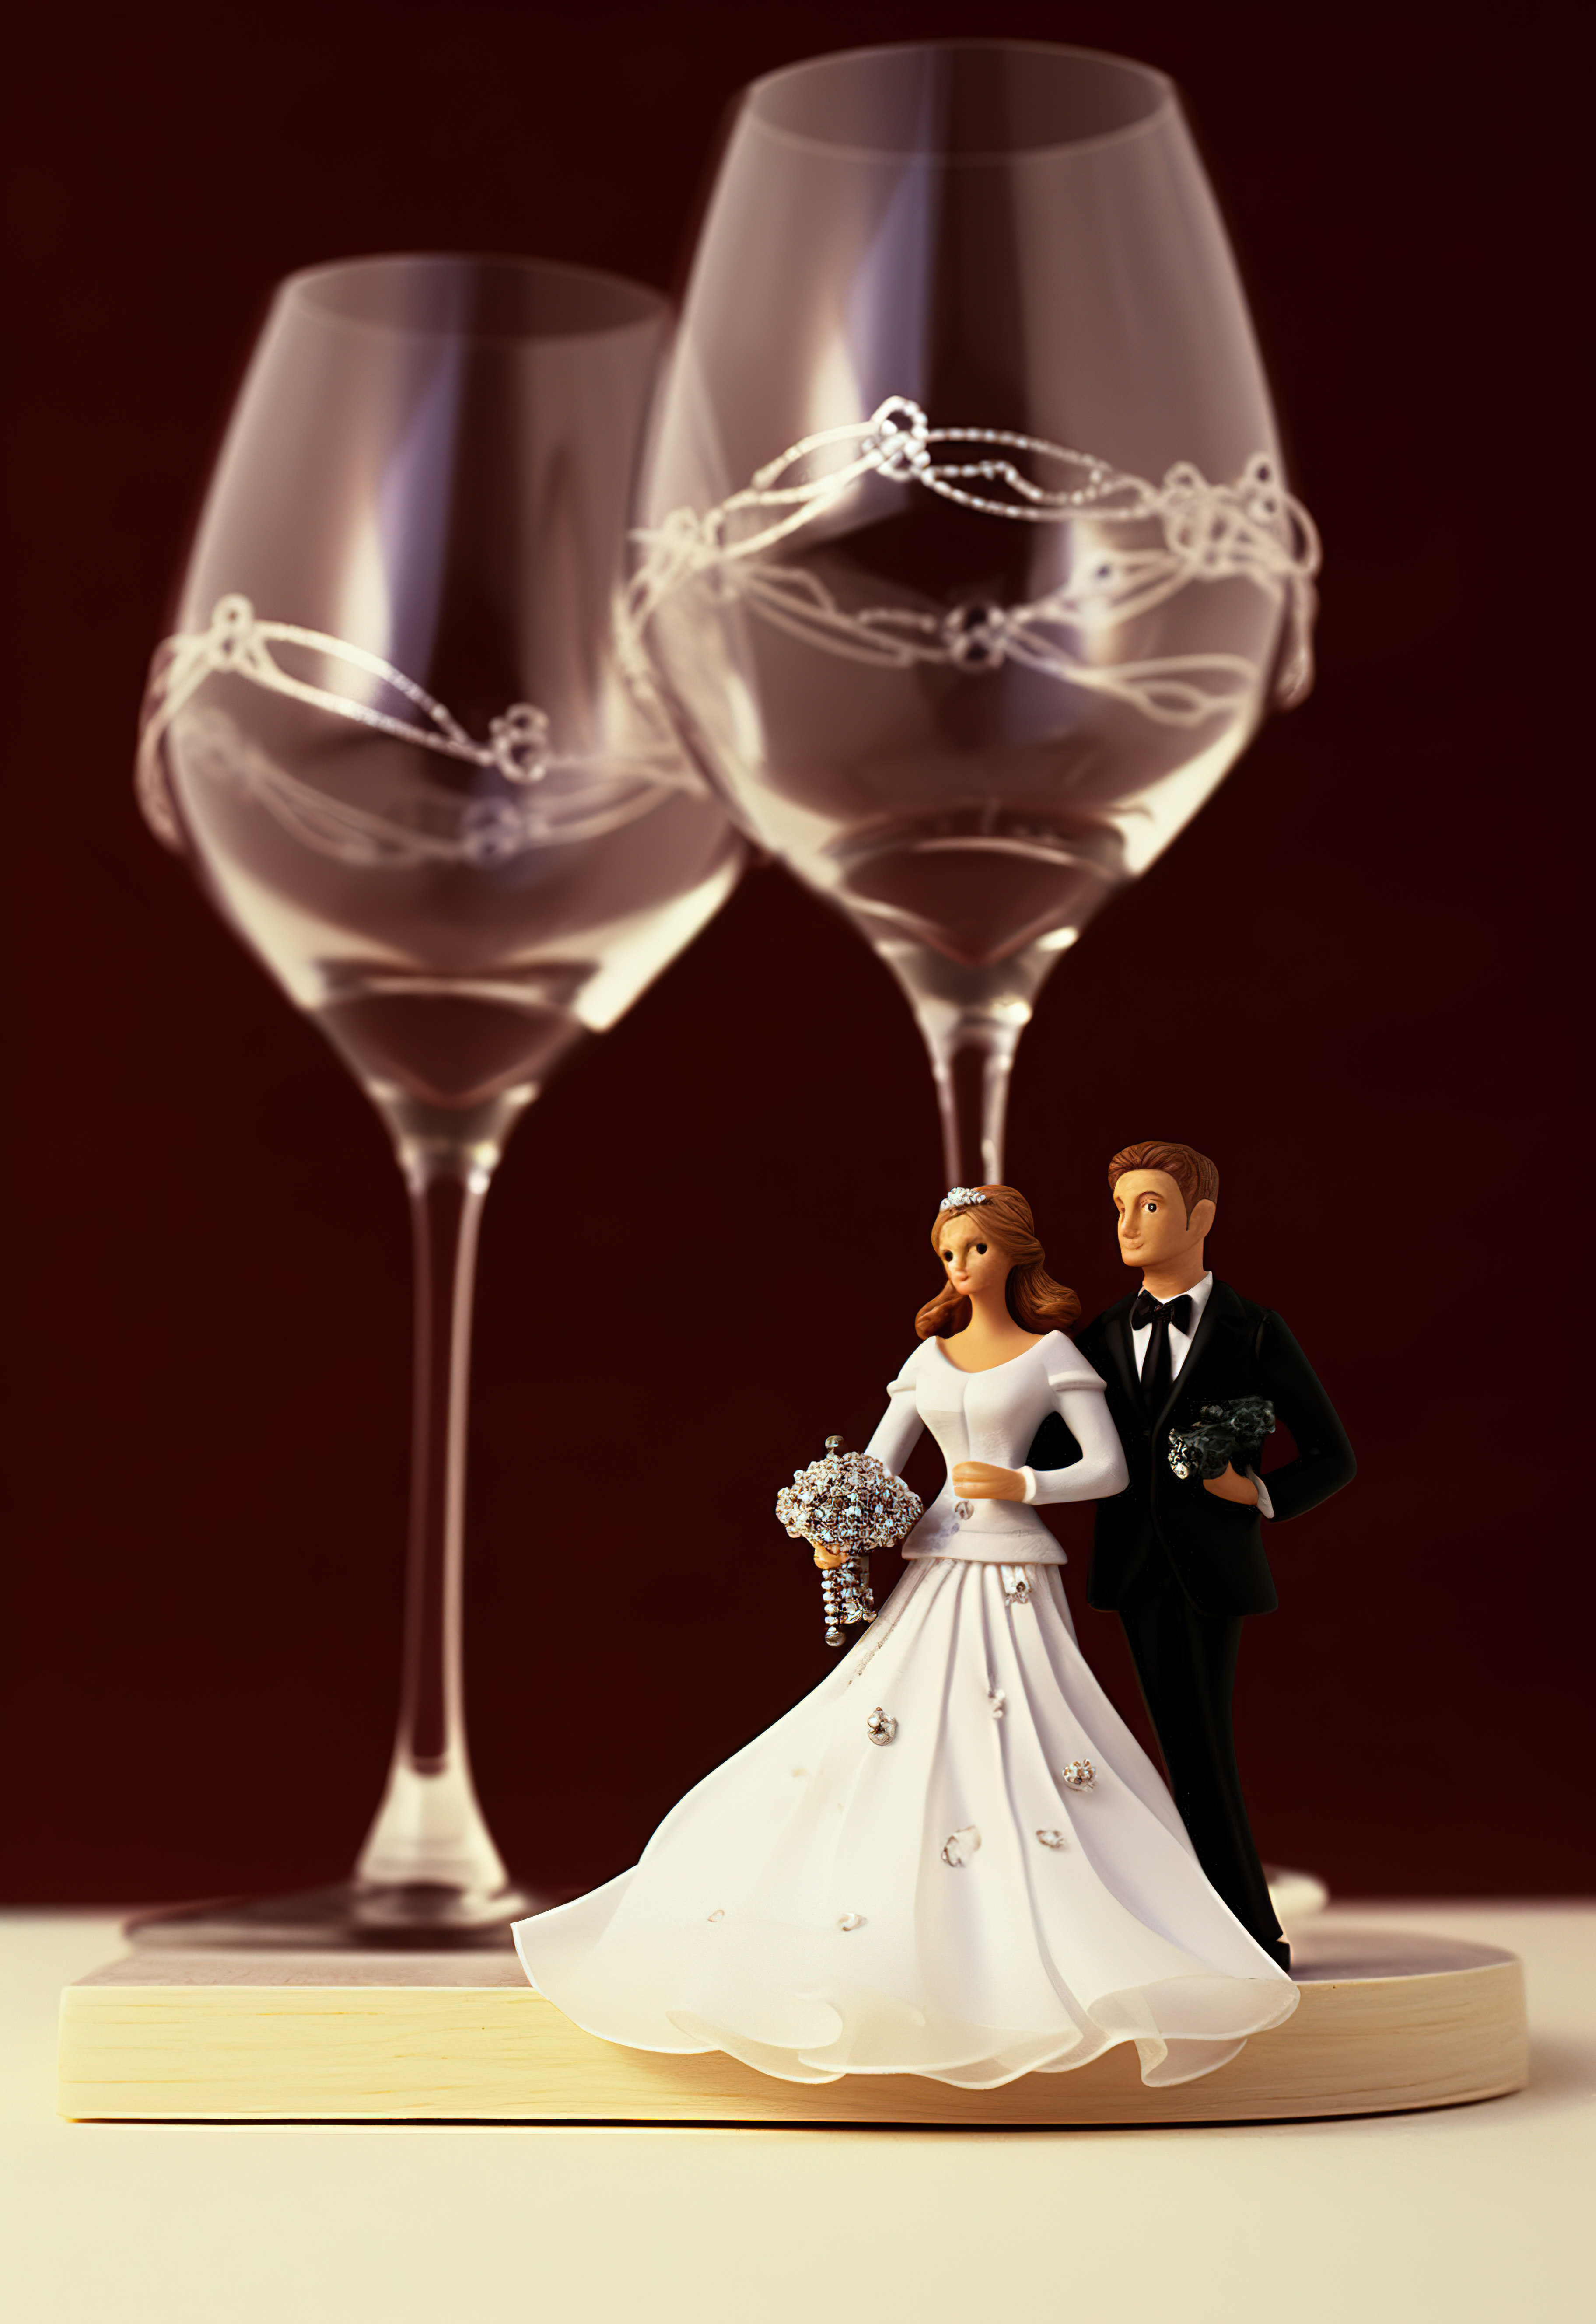 穿裙子的男人和戴酒杯的新娘图片